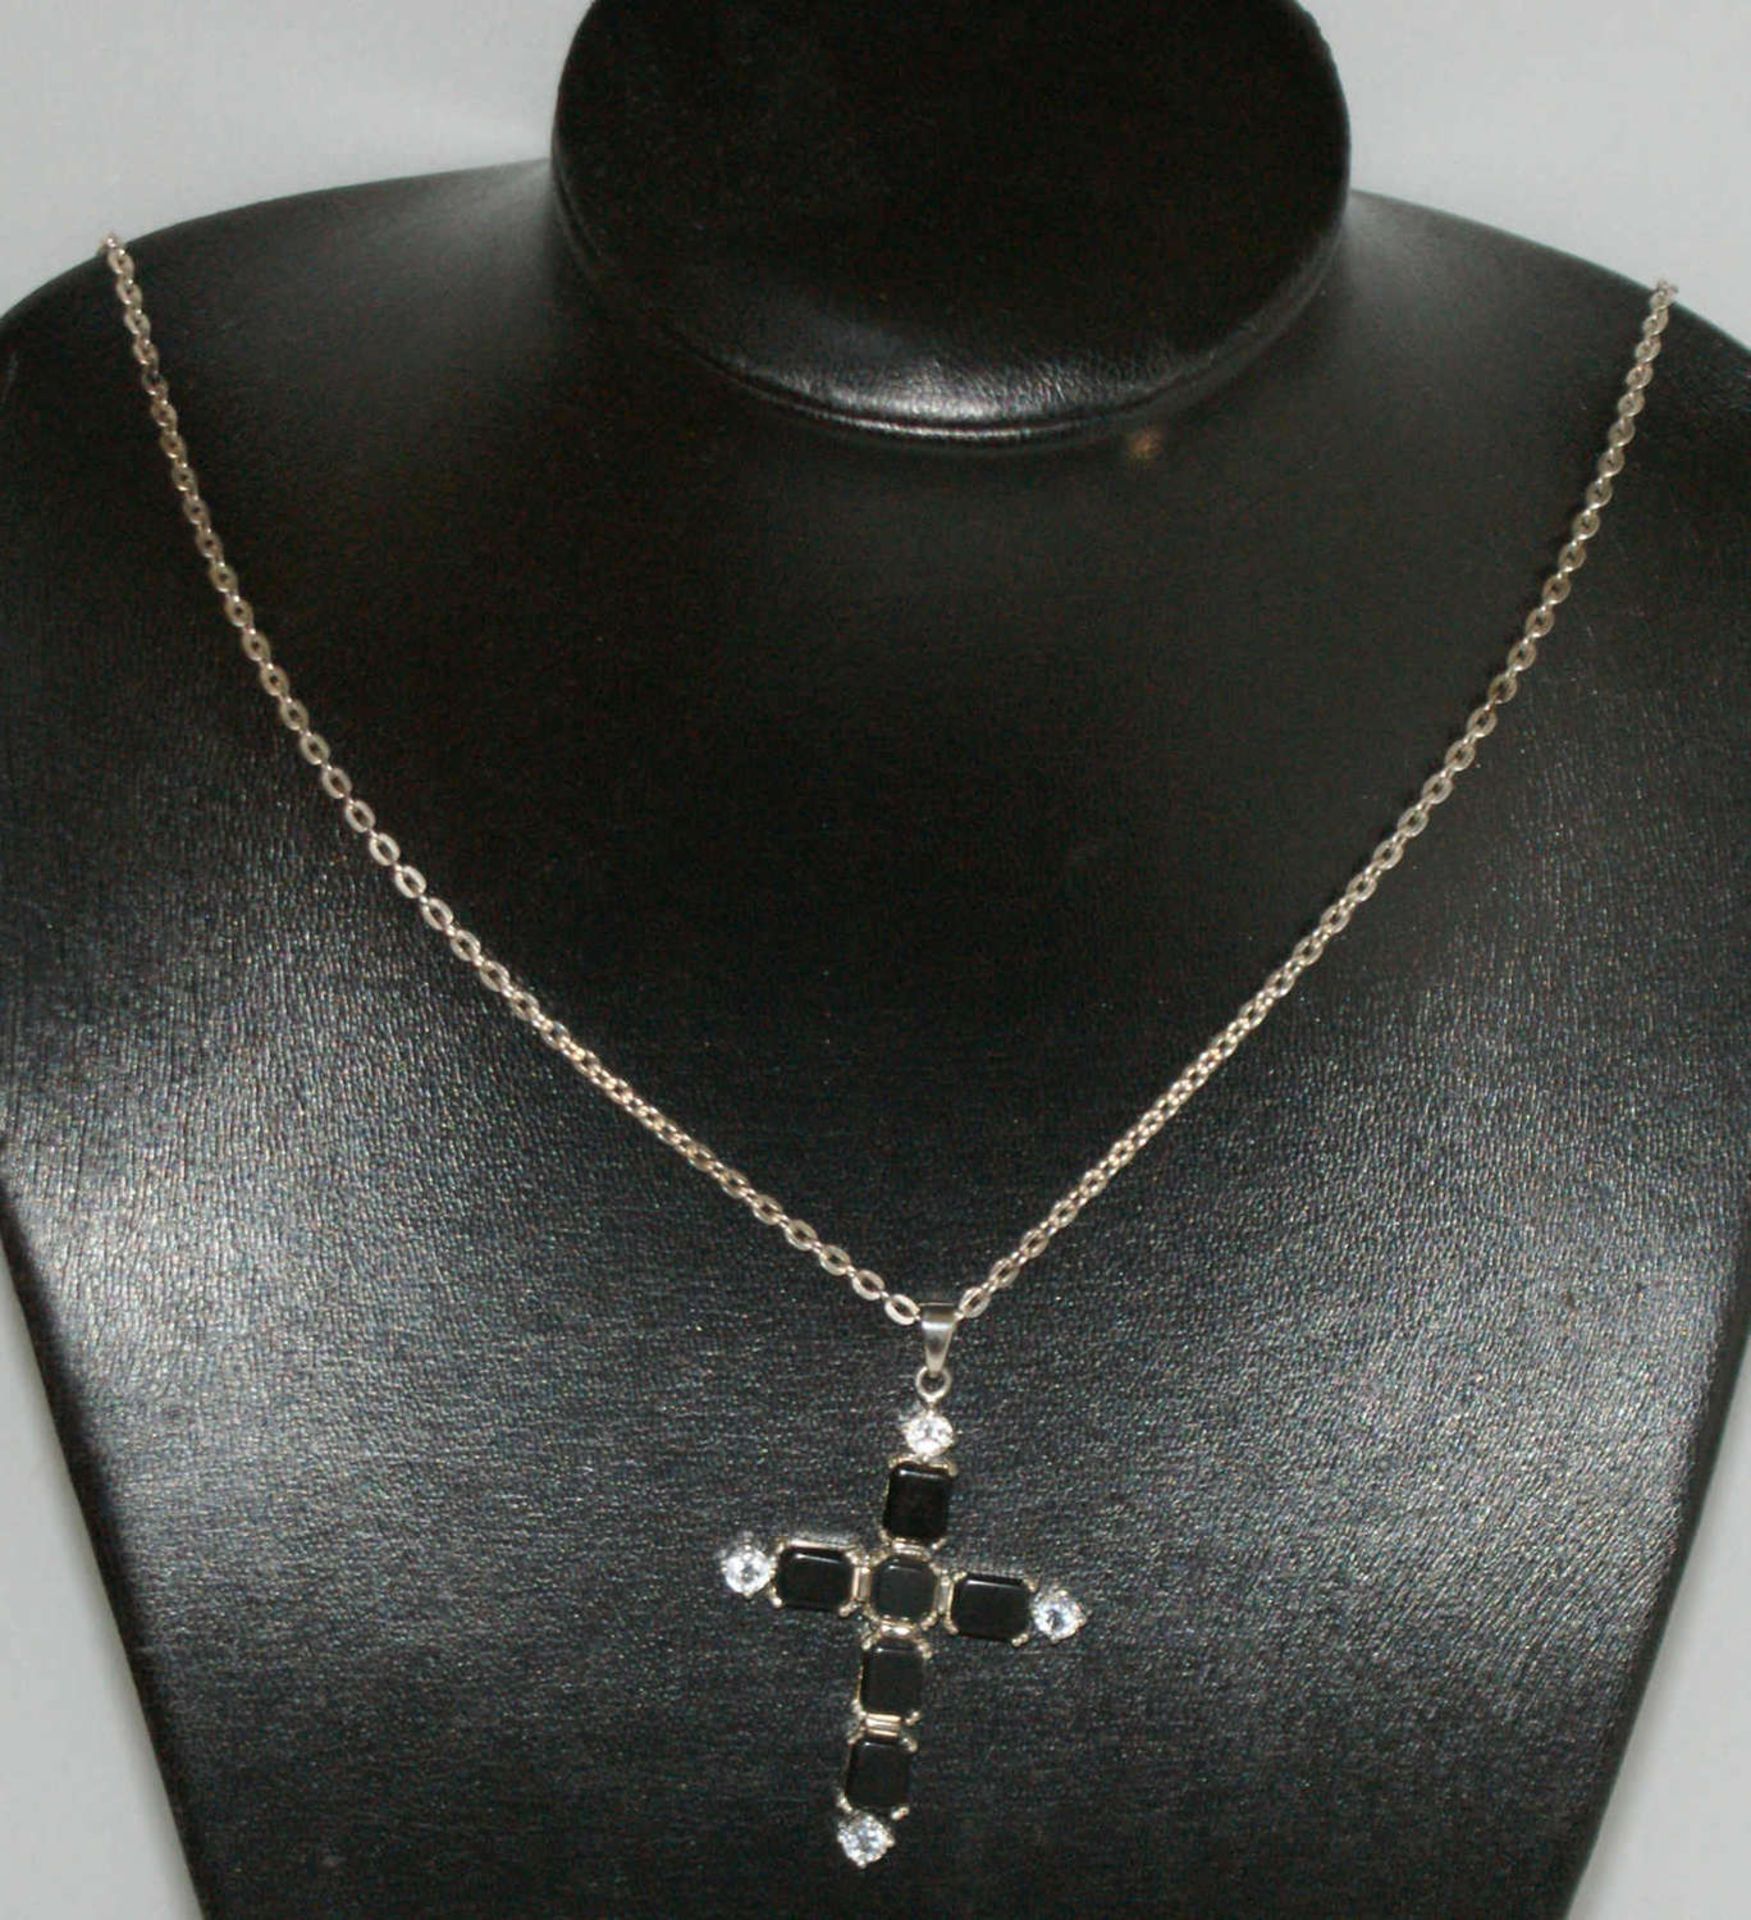 Silberkette mit Silberanhänger "Kreuz", Kreuz besetzt mit Onyx. Maße des Anhängers: Höhe ca. 12,5